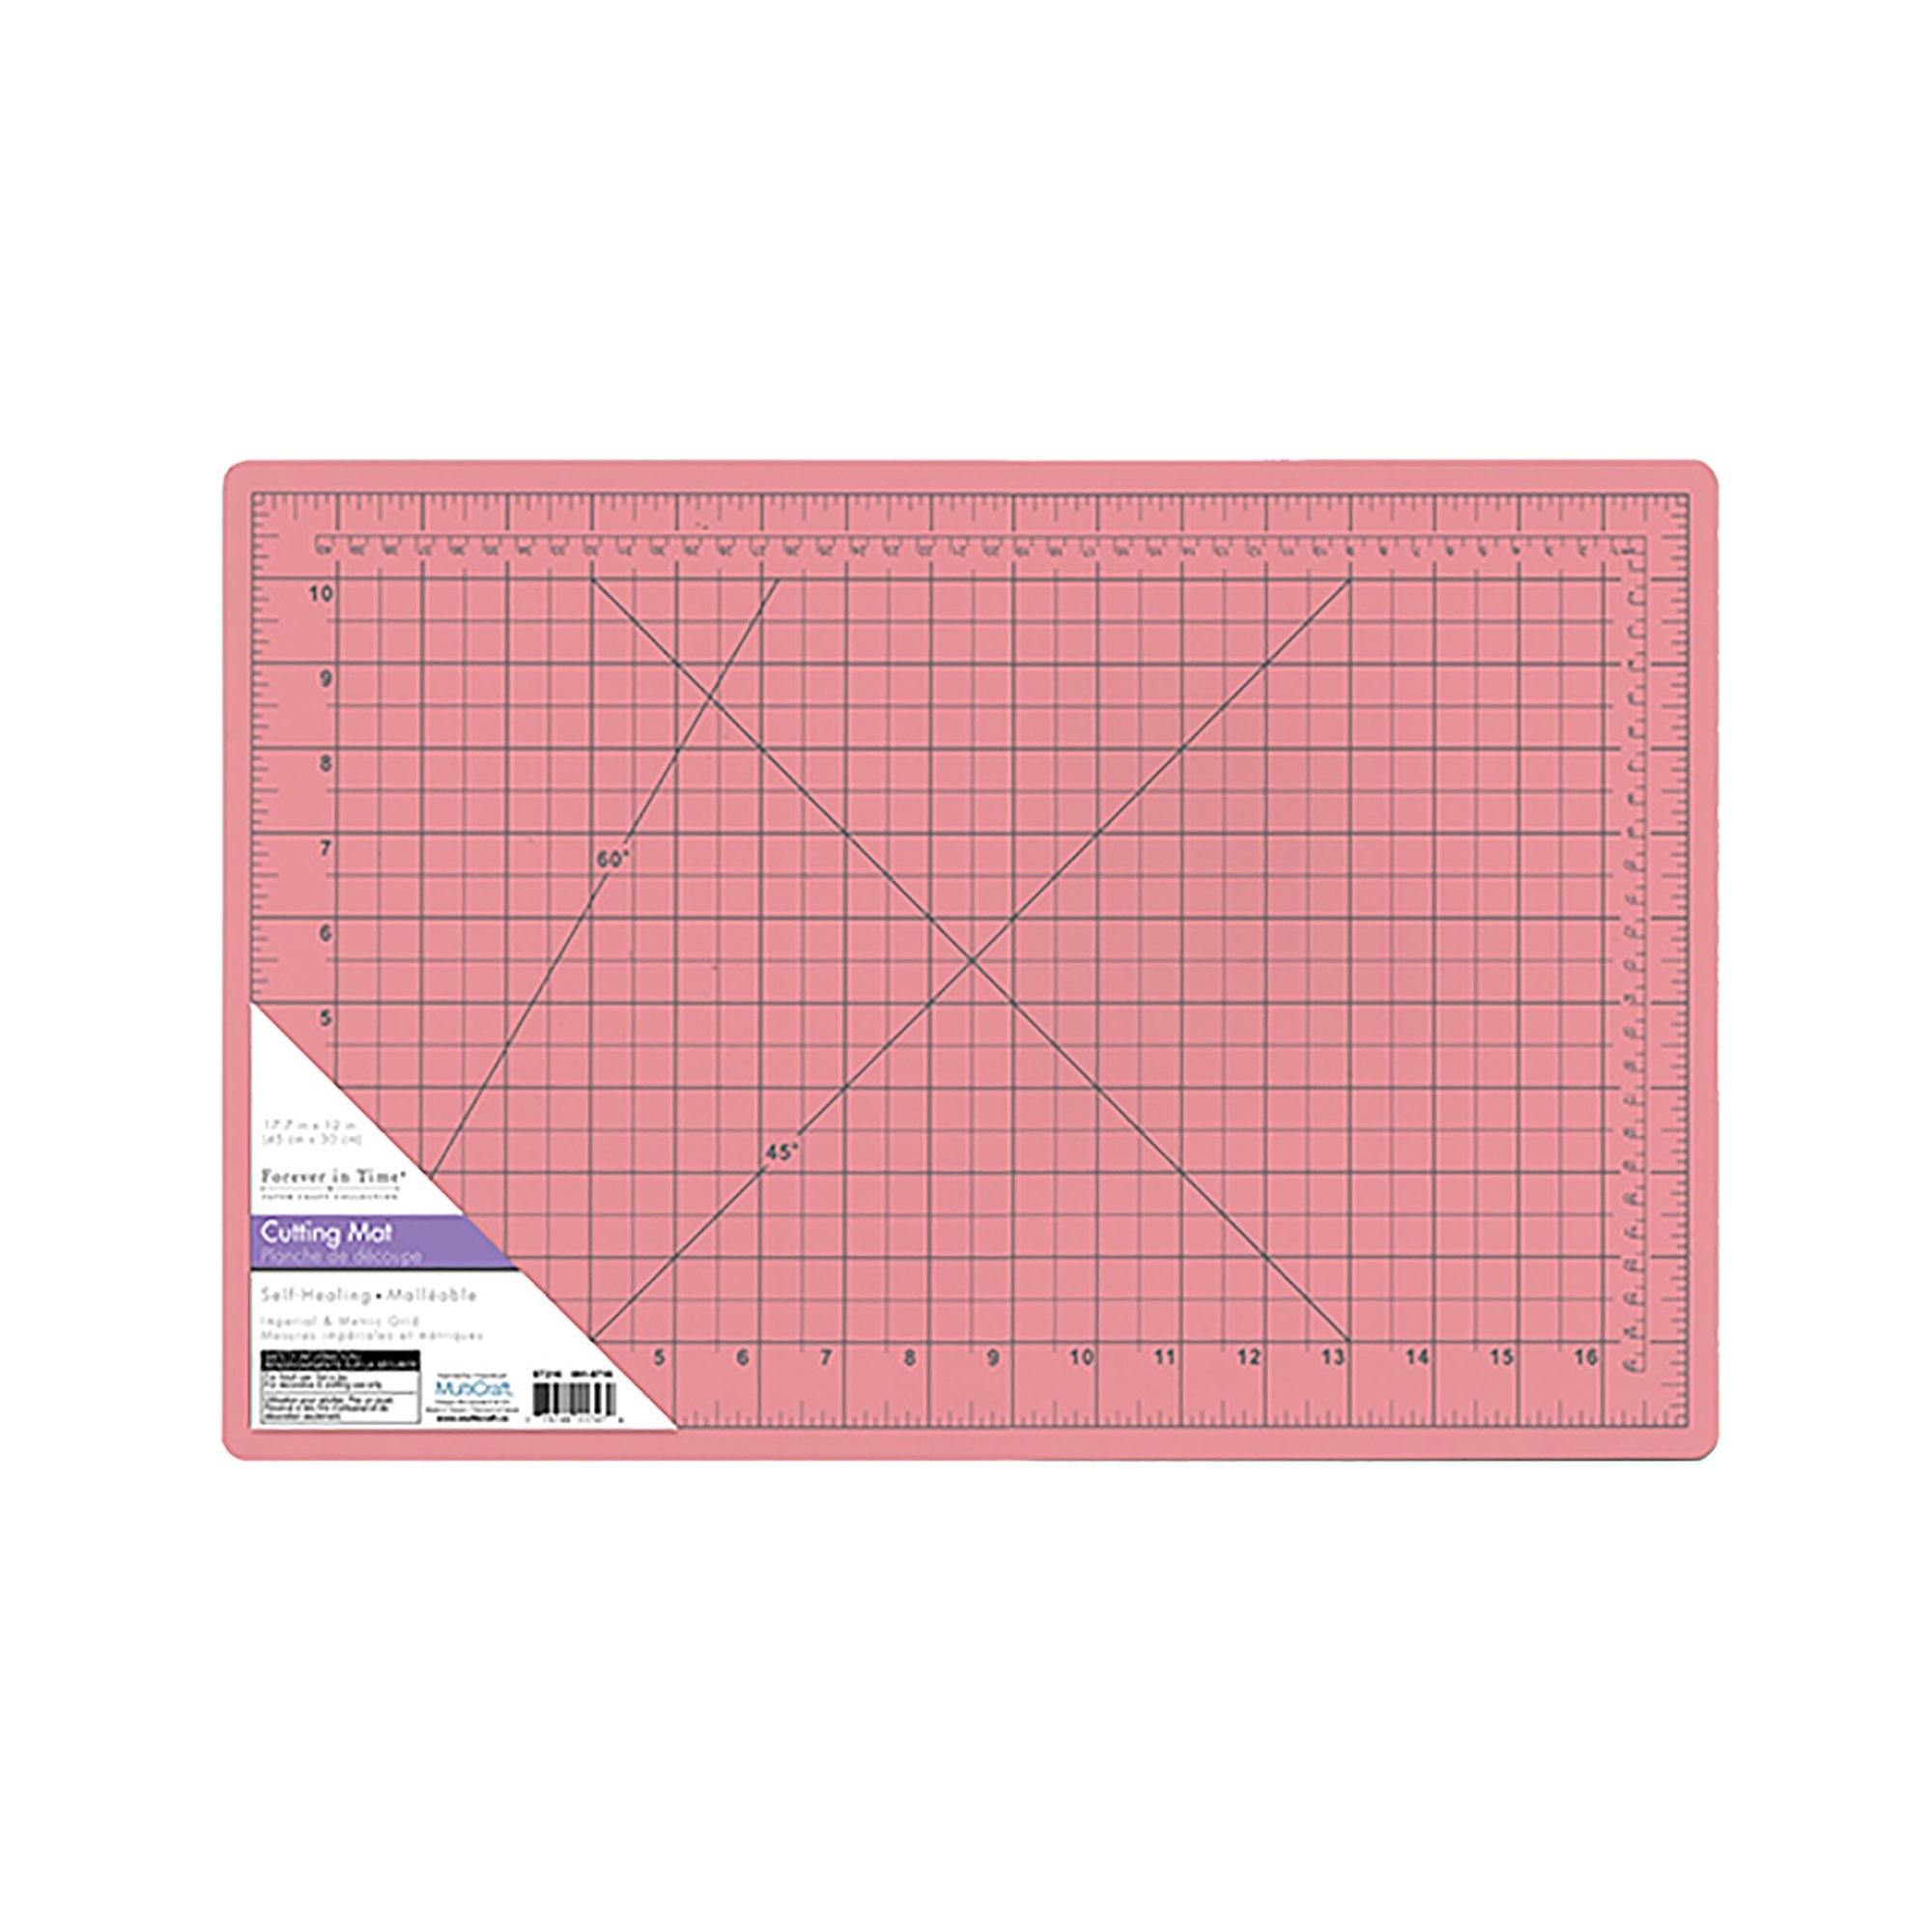 Paper Craft Essential: 12"X17.75" Self-Healing Cutting Mat (A3) W/Grids - Dollar Max Dépôt